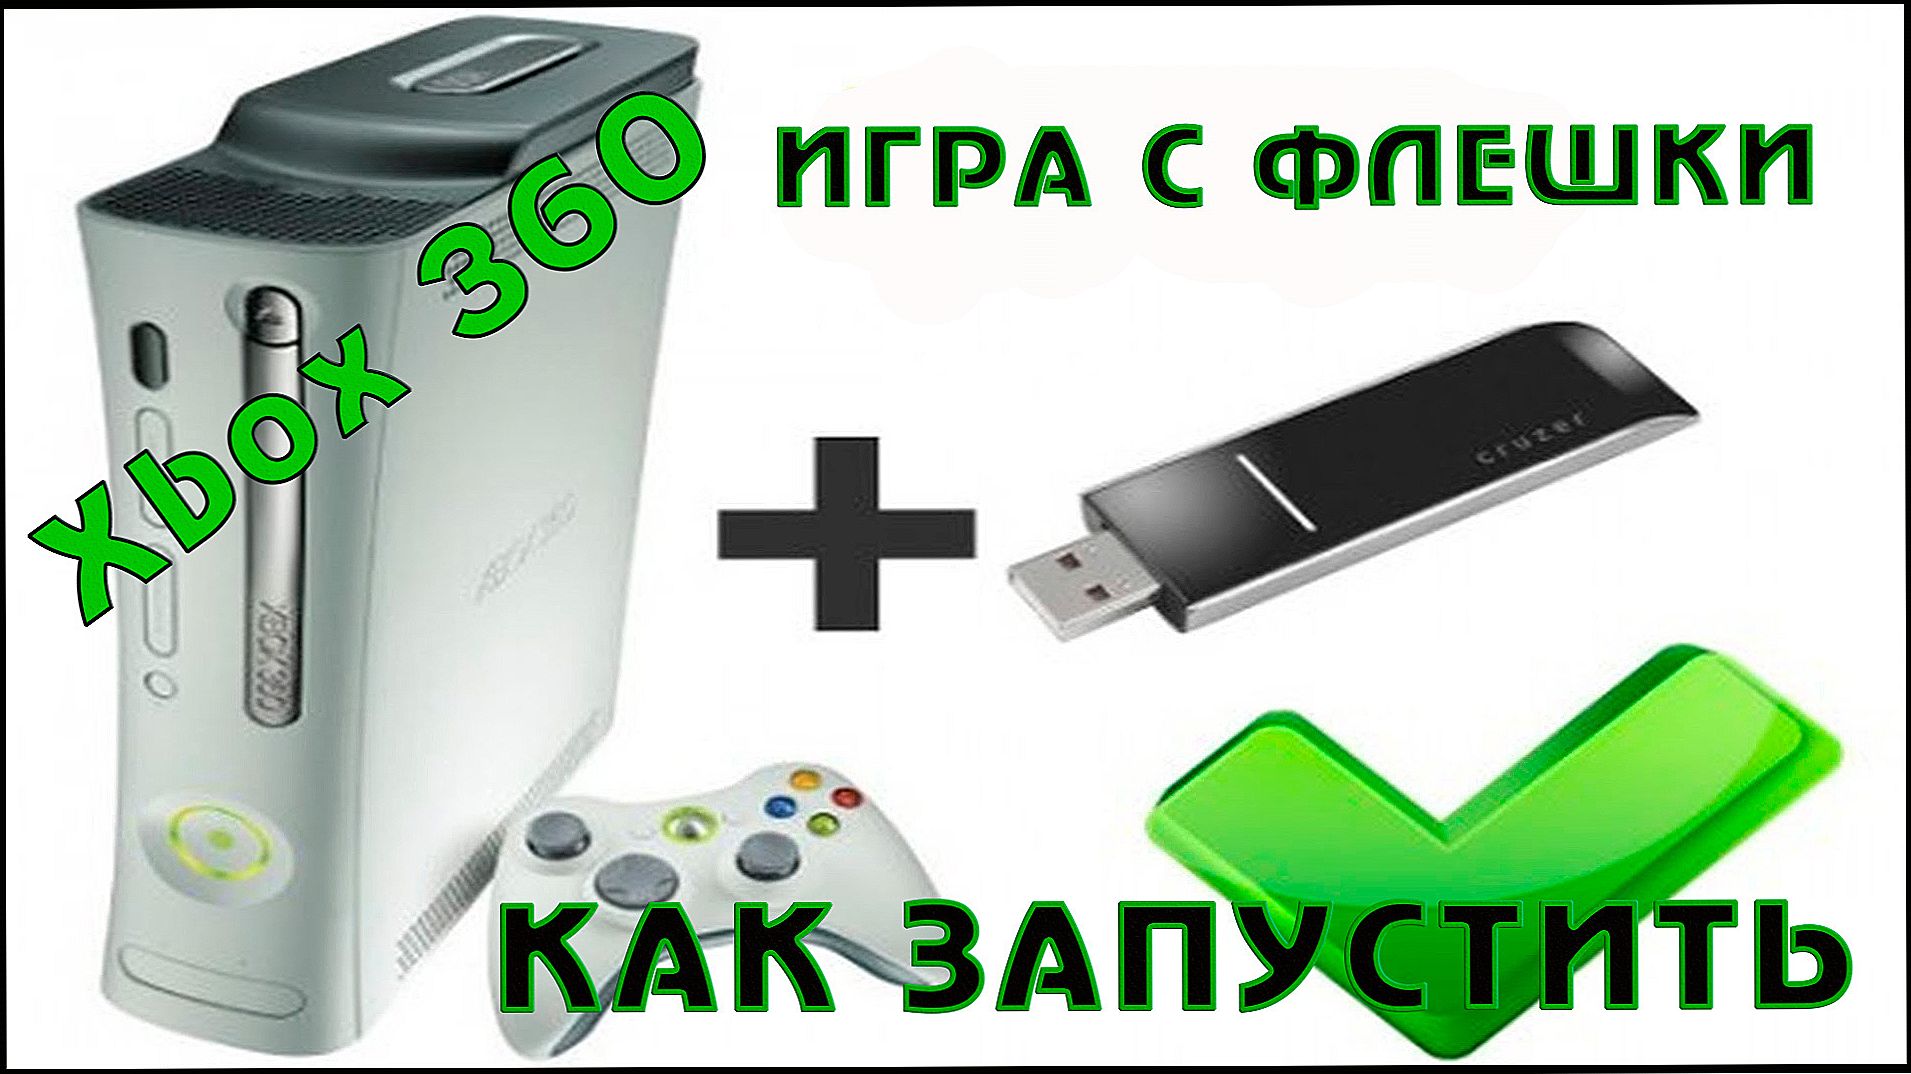 Jak Grac Na Xbox 360 Z Dysku Flash Napraw I Konfiguruj Komputery Wlasnymi Rekami